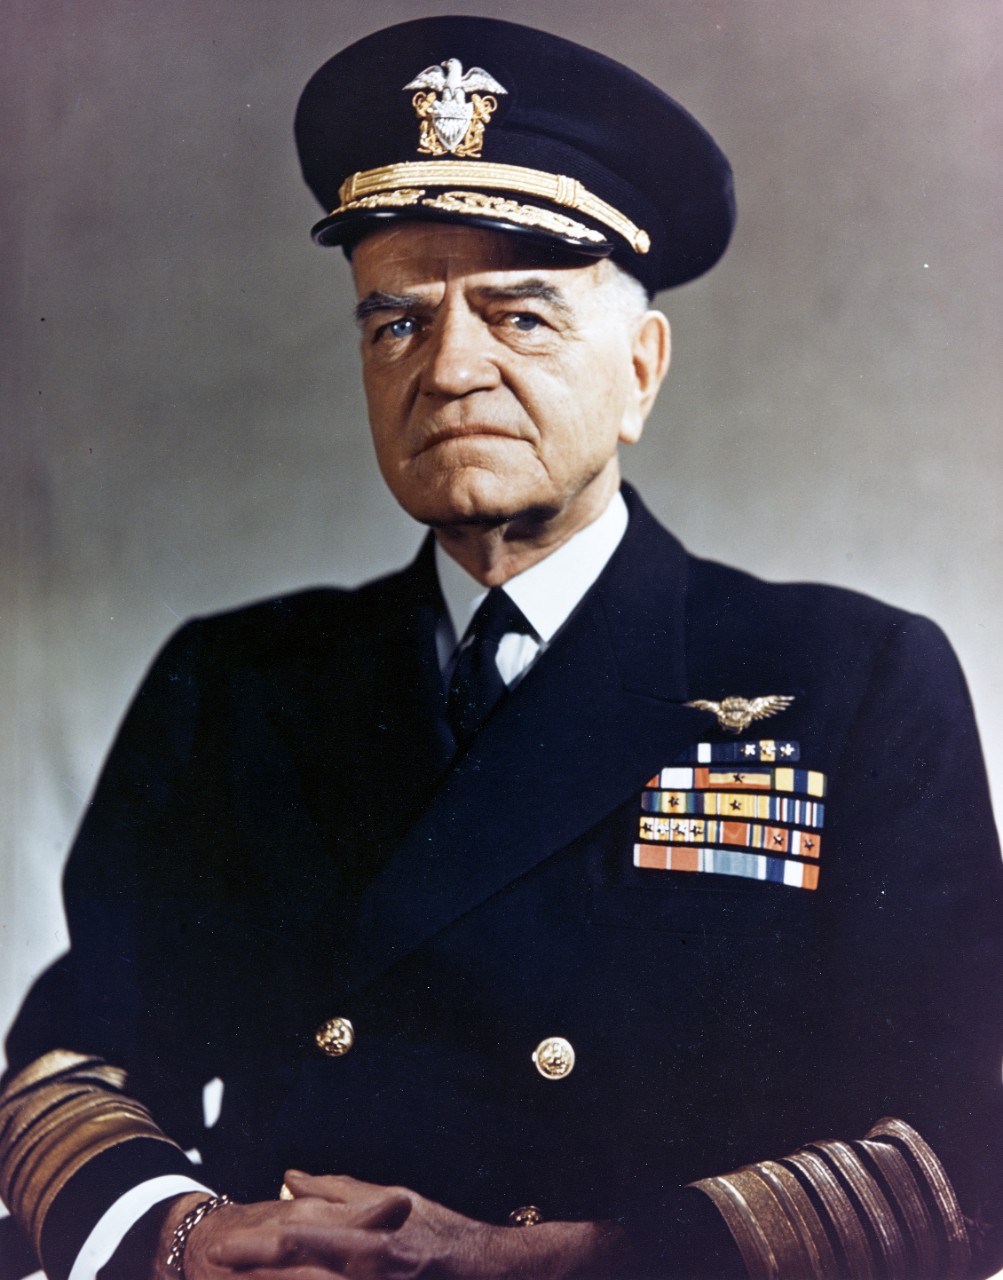 Photo #: 80-G-K-15137 Fleet Admiral William F. Halsey, USN